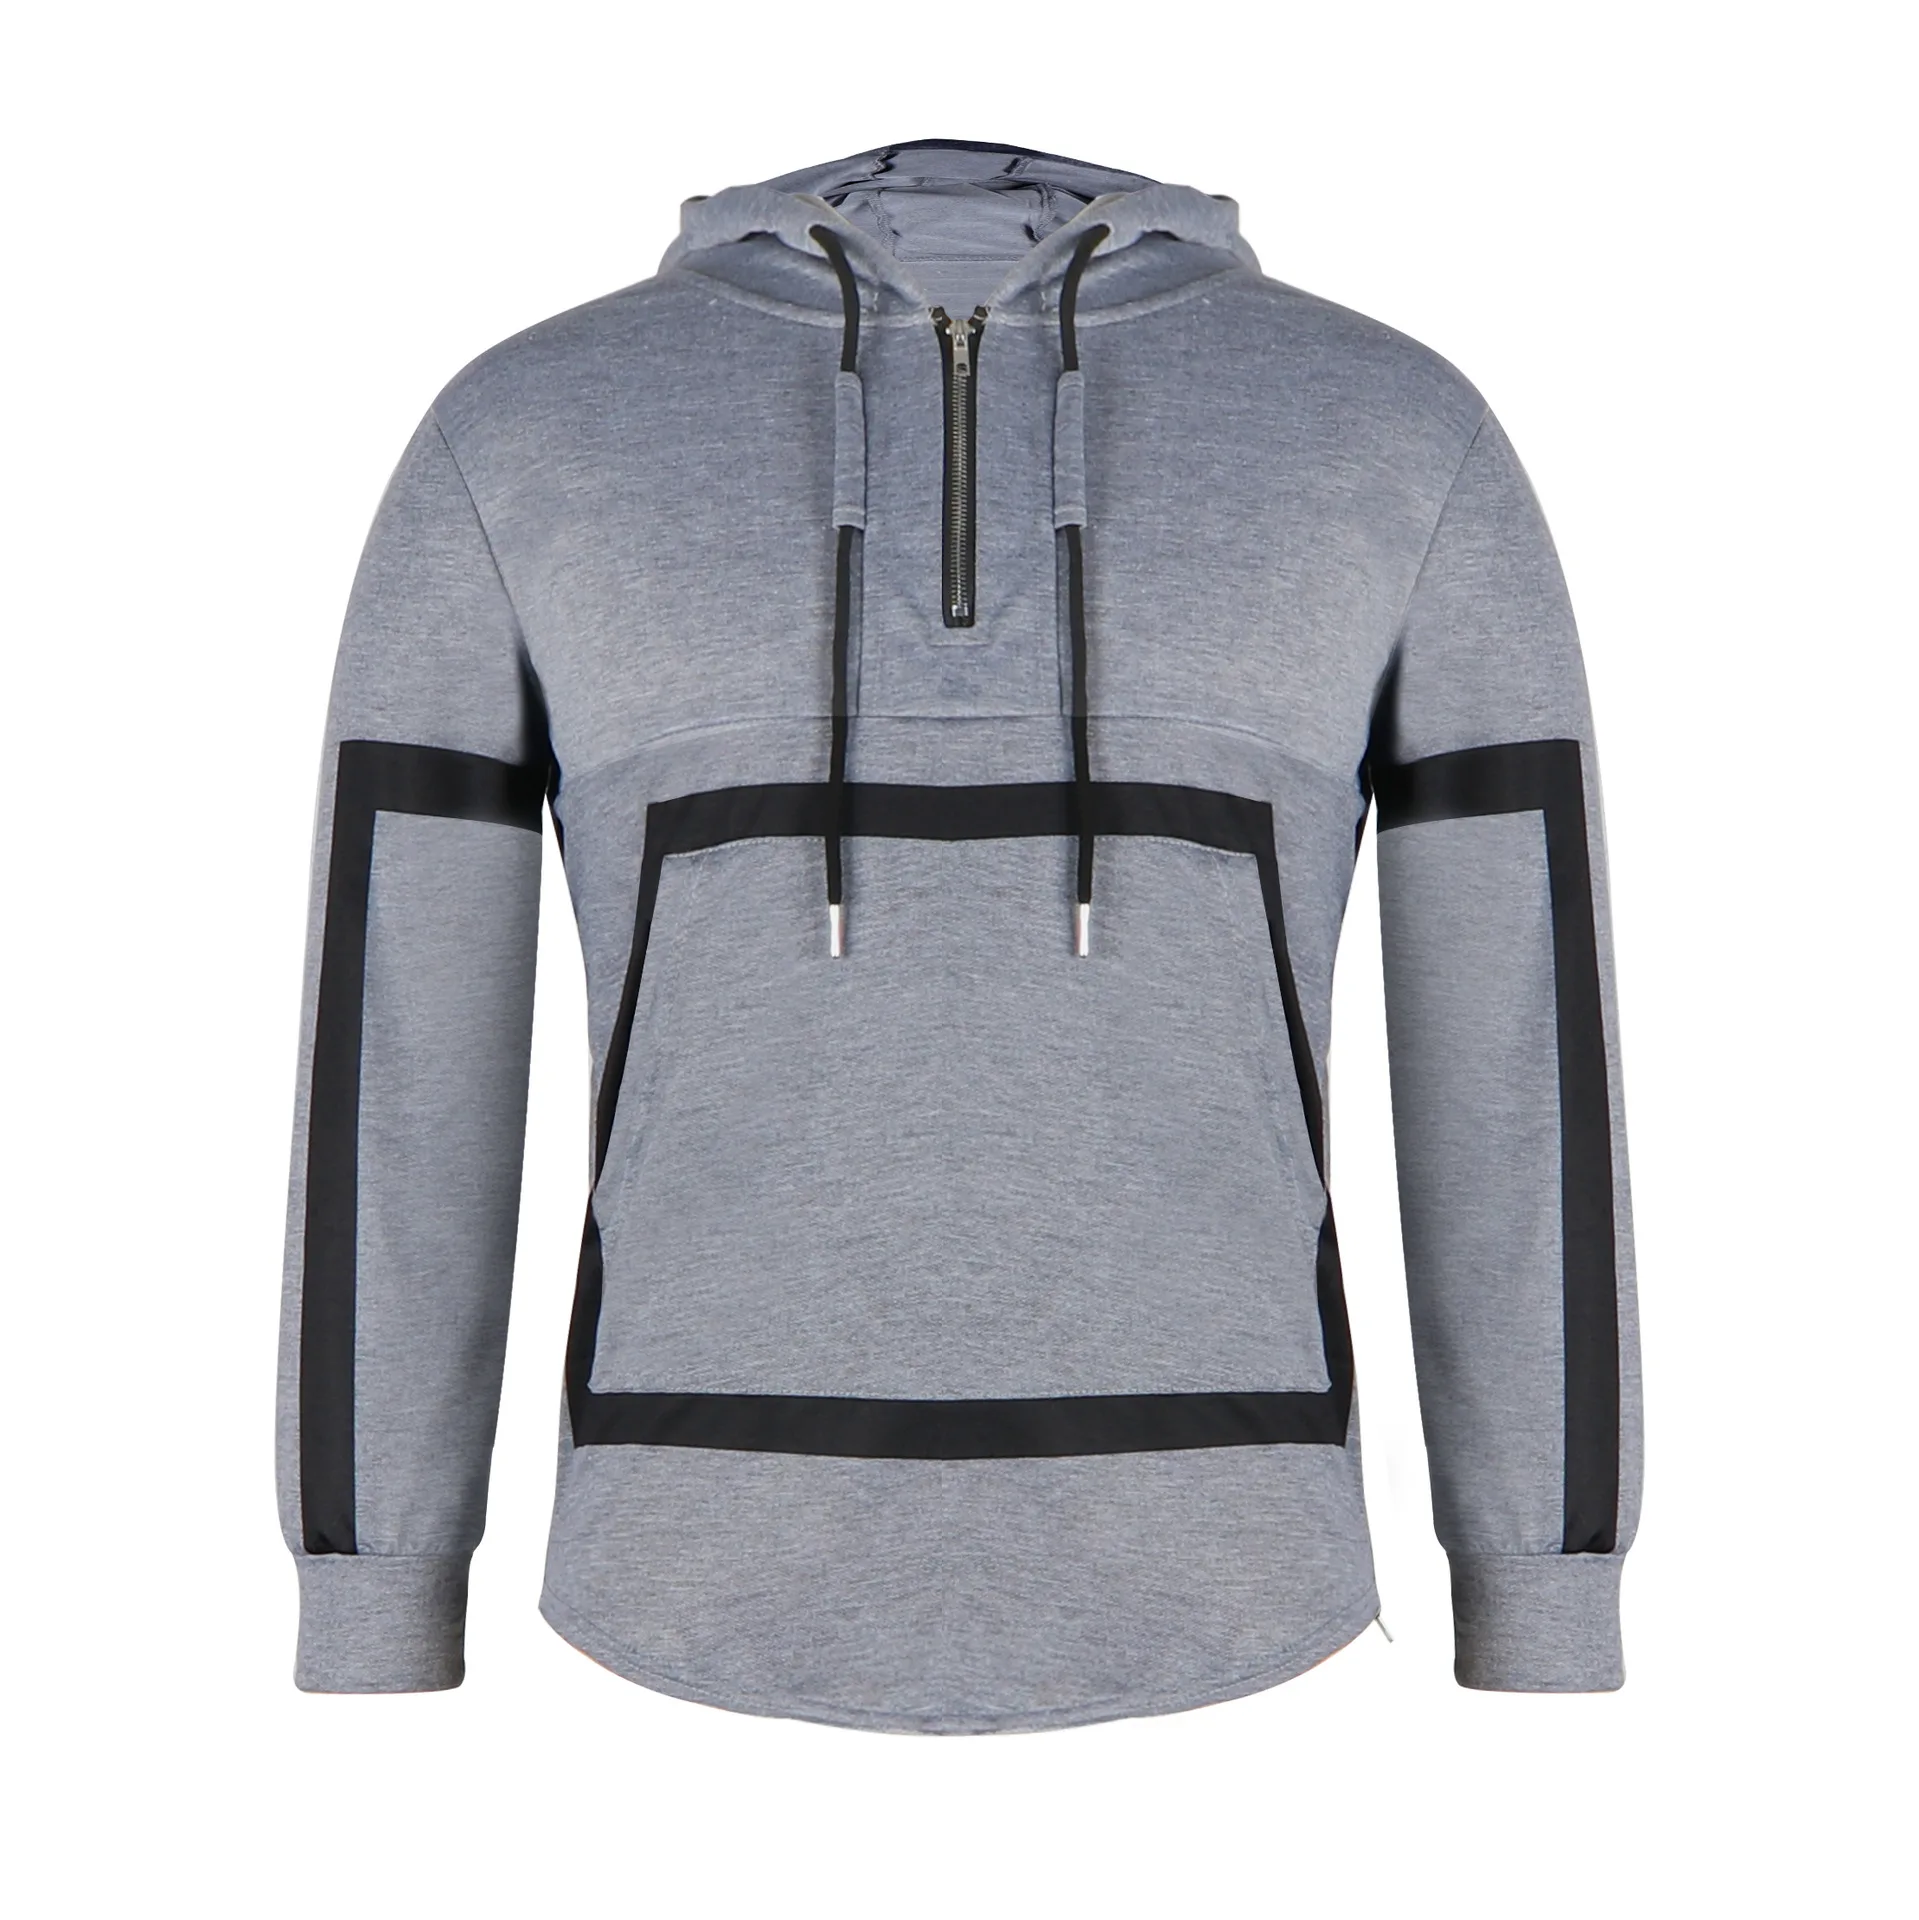 Wholesale Sweatshirts 1/4 Zipper Fit Hoodies For Winter Men - Buy Heavy ...